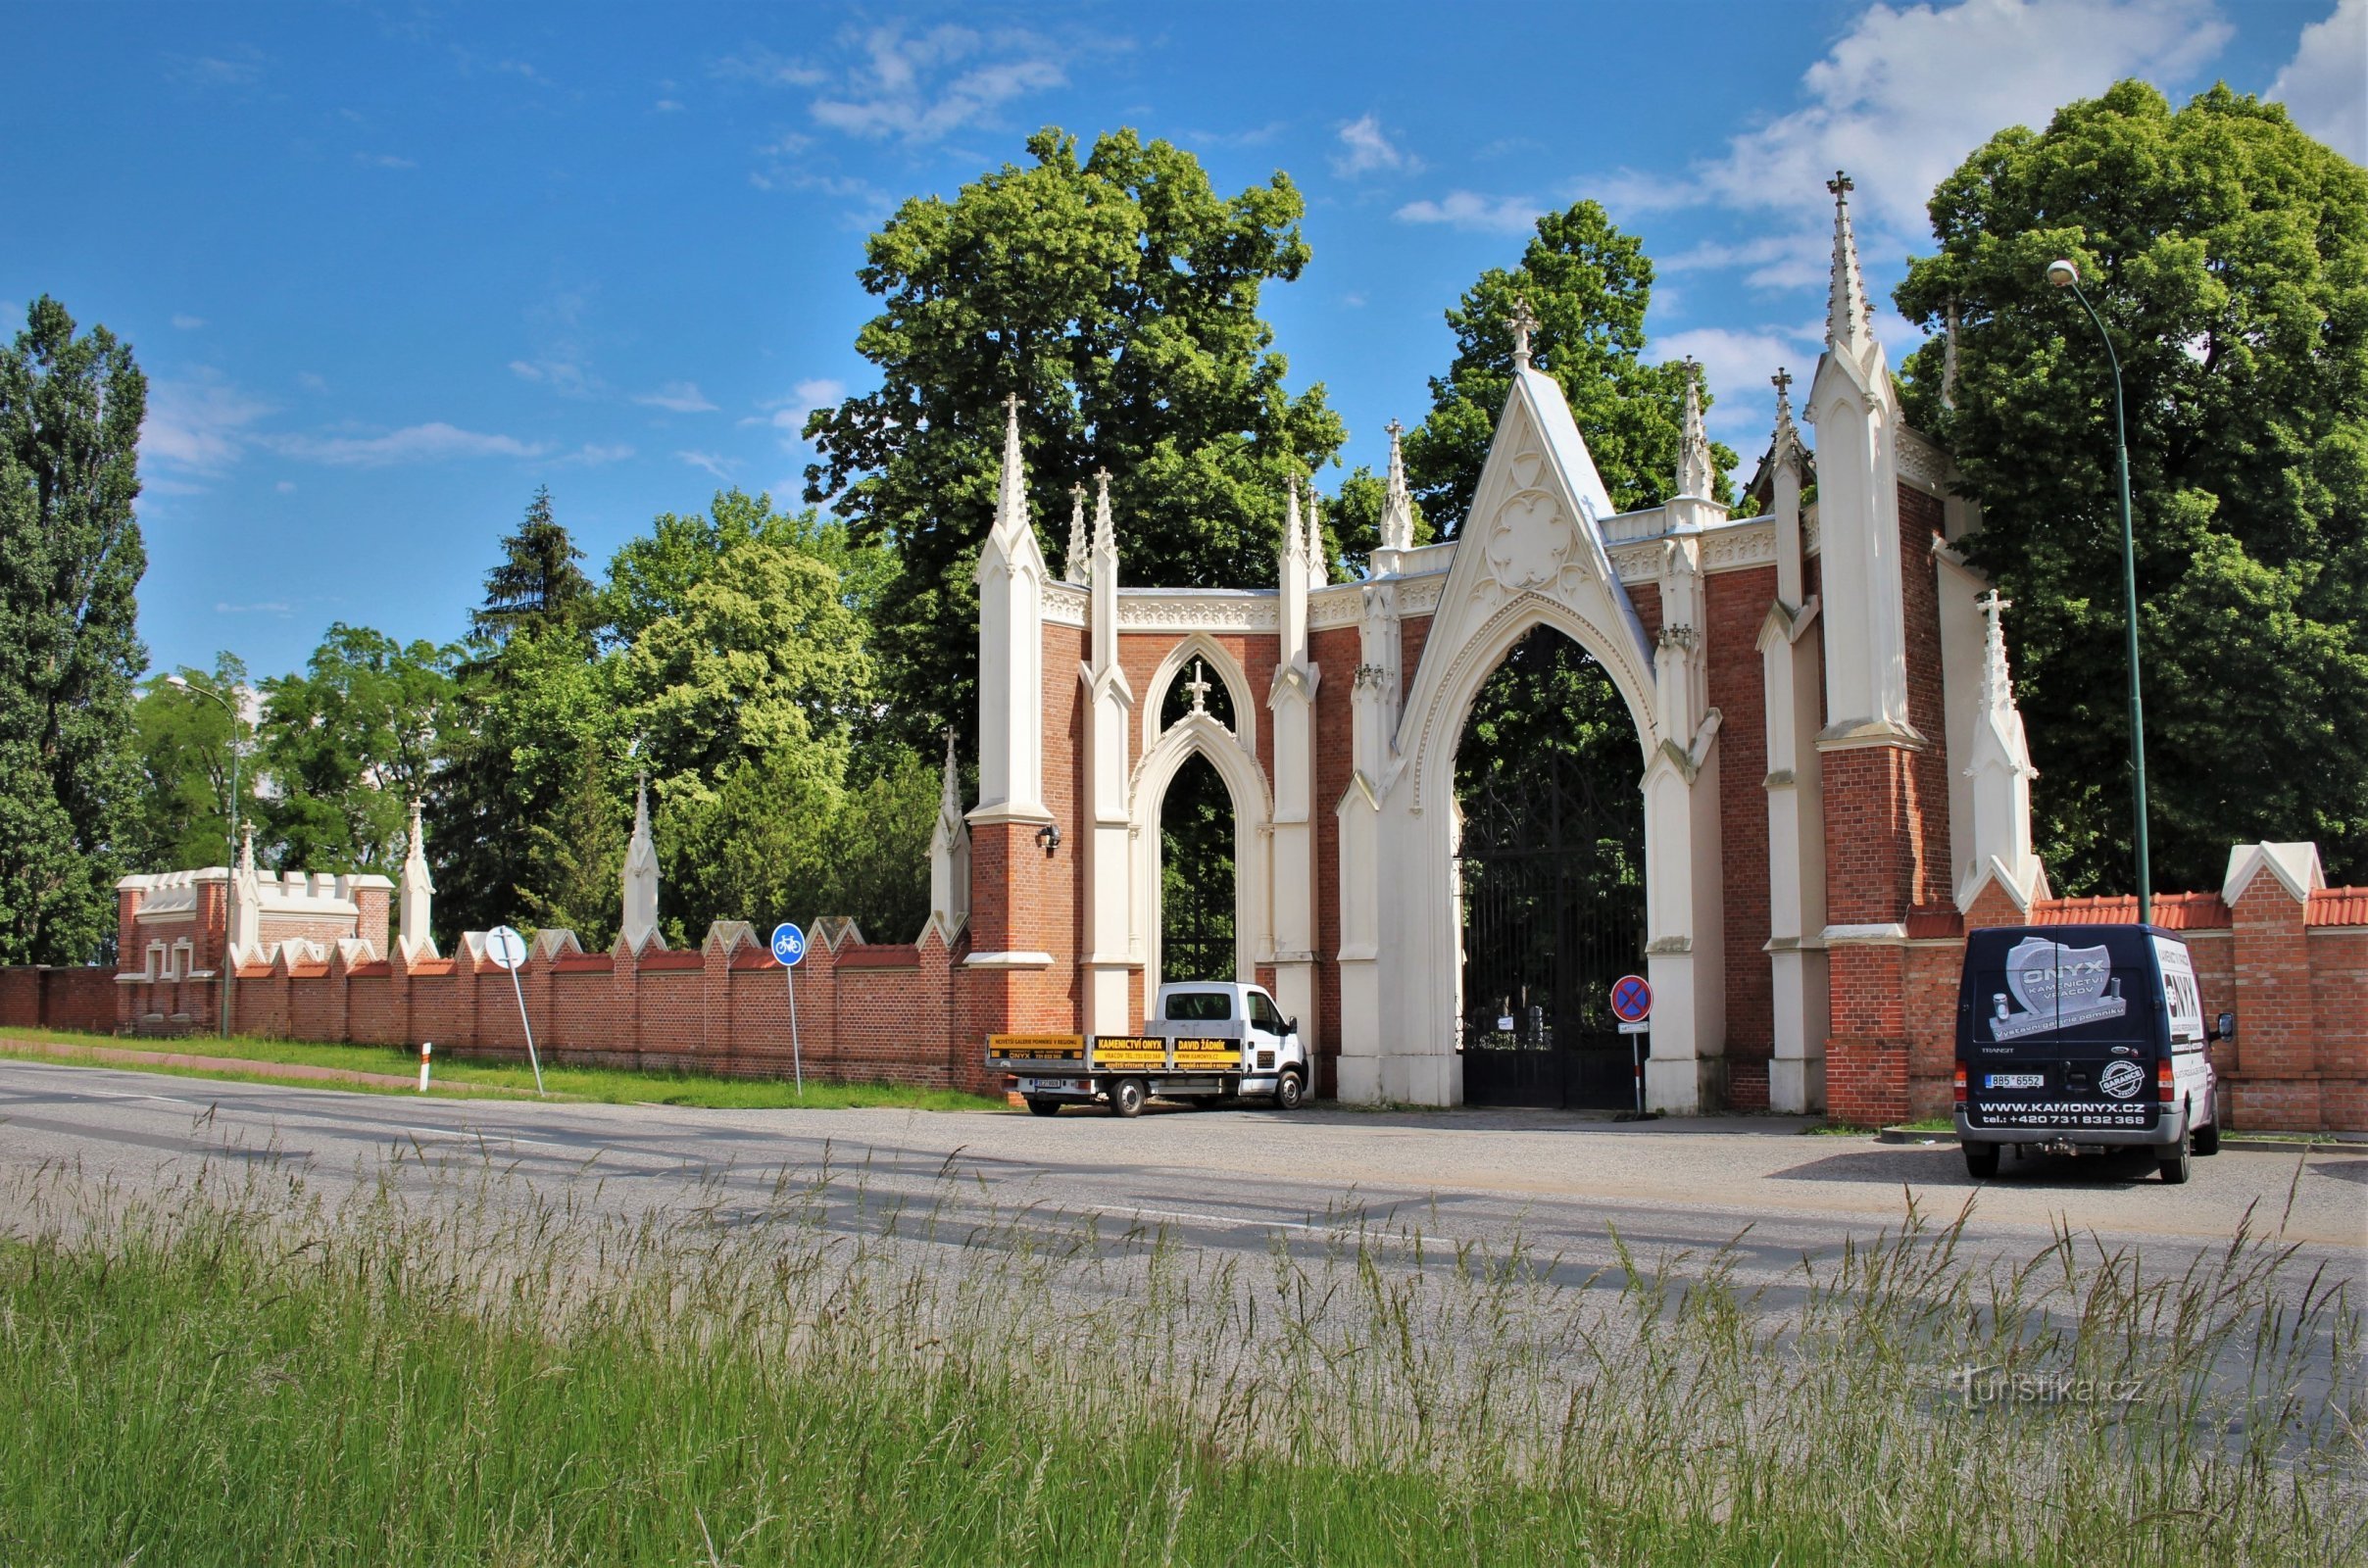 Indgangsport til kirkegården med mur